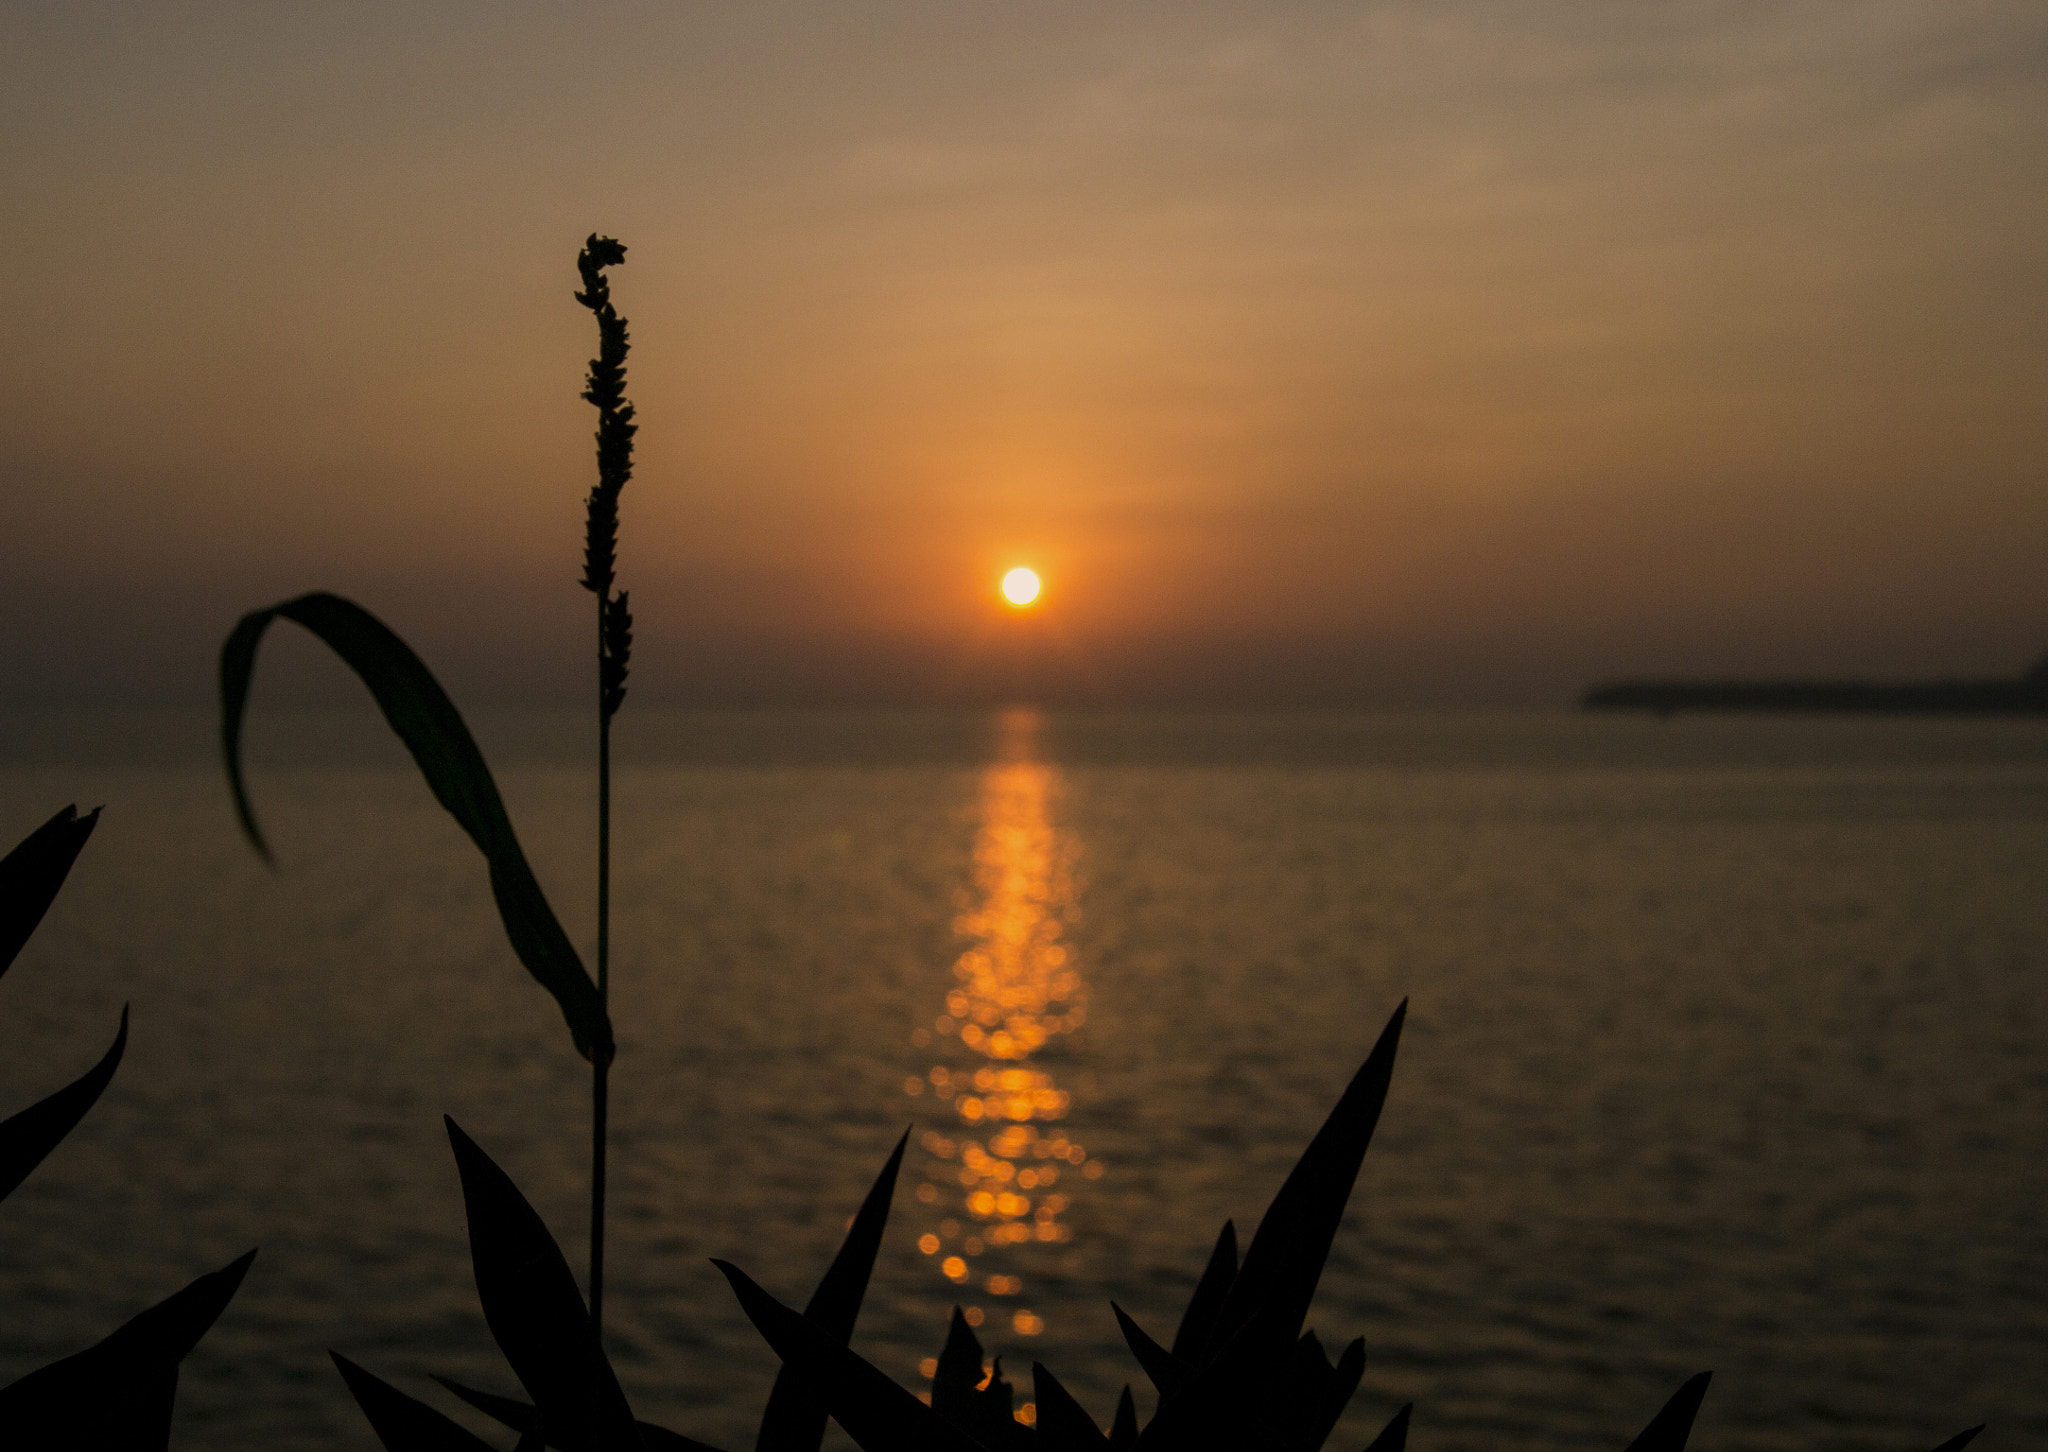 Nikon D3100 + AF Zoom-Nikkor 28-70mm f/3.5-4.5D sample photo. Sunset silhouette photography